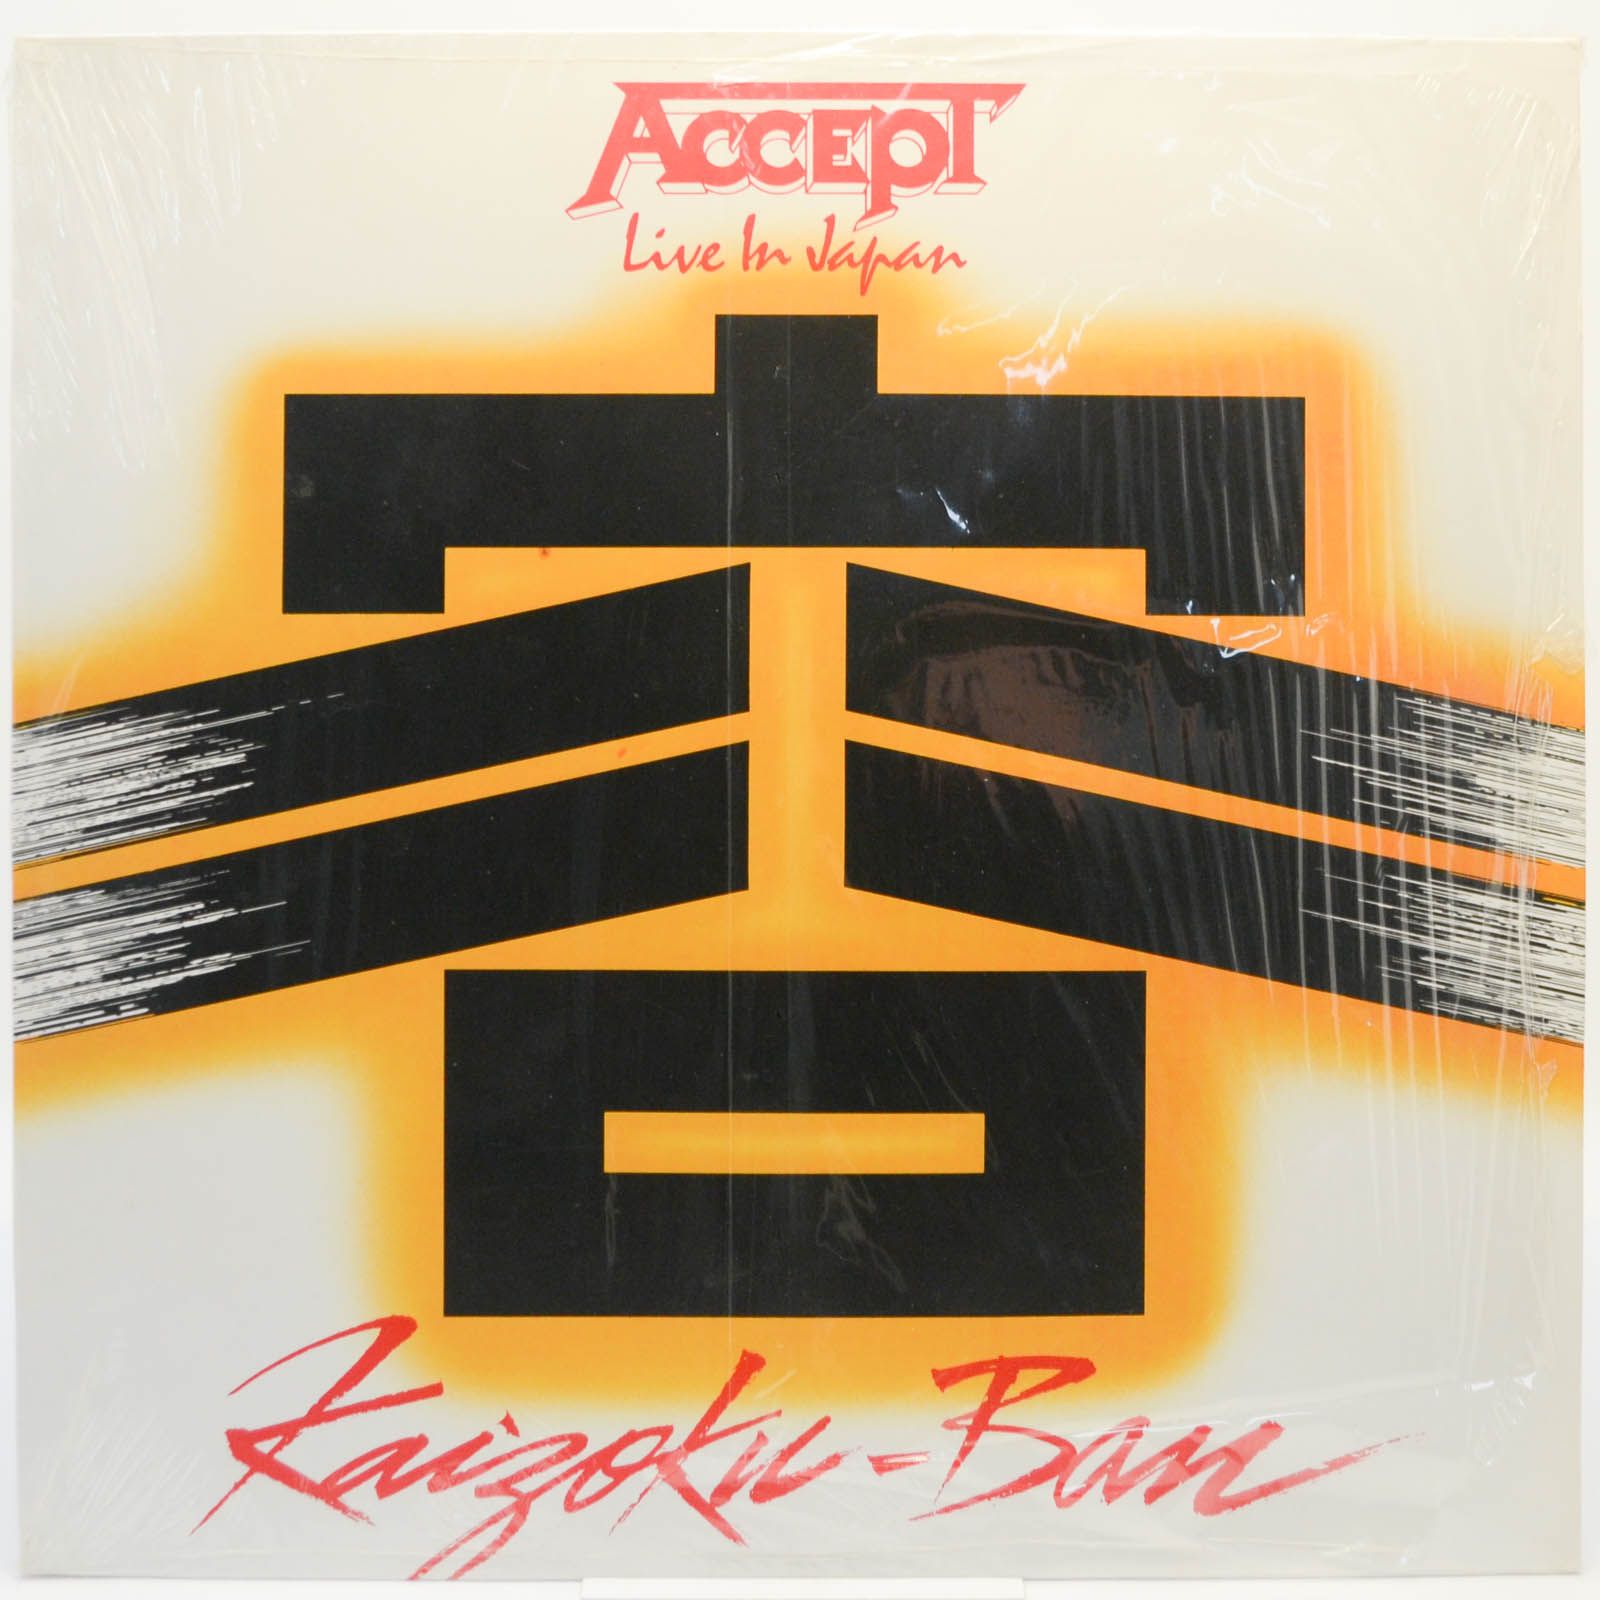 Accept — Kaizoku-Ban, 1985